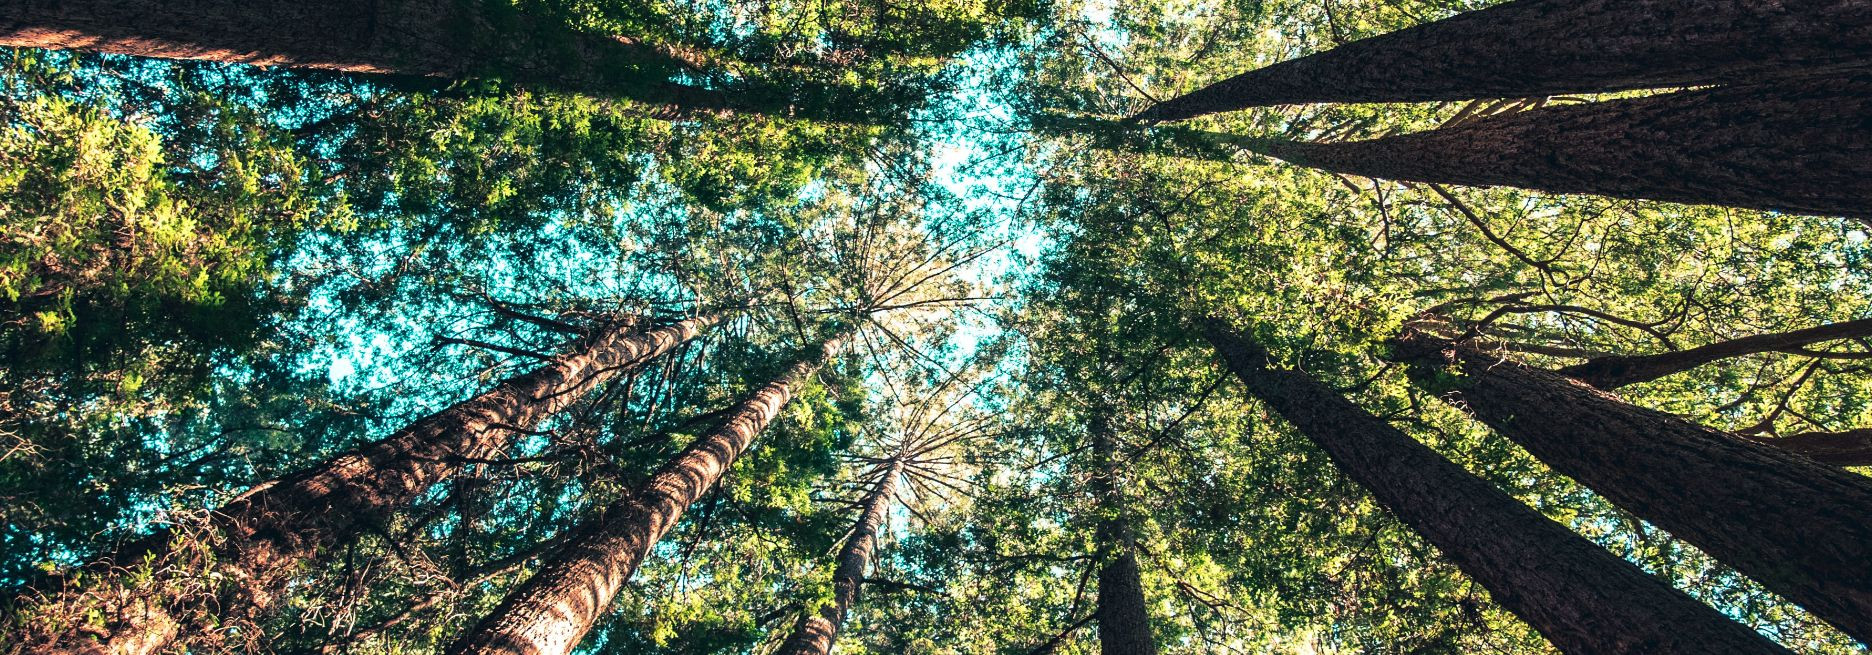 Metsa uuendamine on oluline protsess, mille eesmärk on tagada metsade jätkusuutlikkus ja säilimine. Metsa uuendamine tähendab uute puude kasvatamist ja noorenda